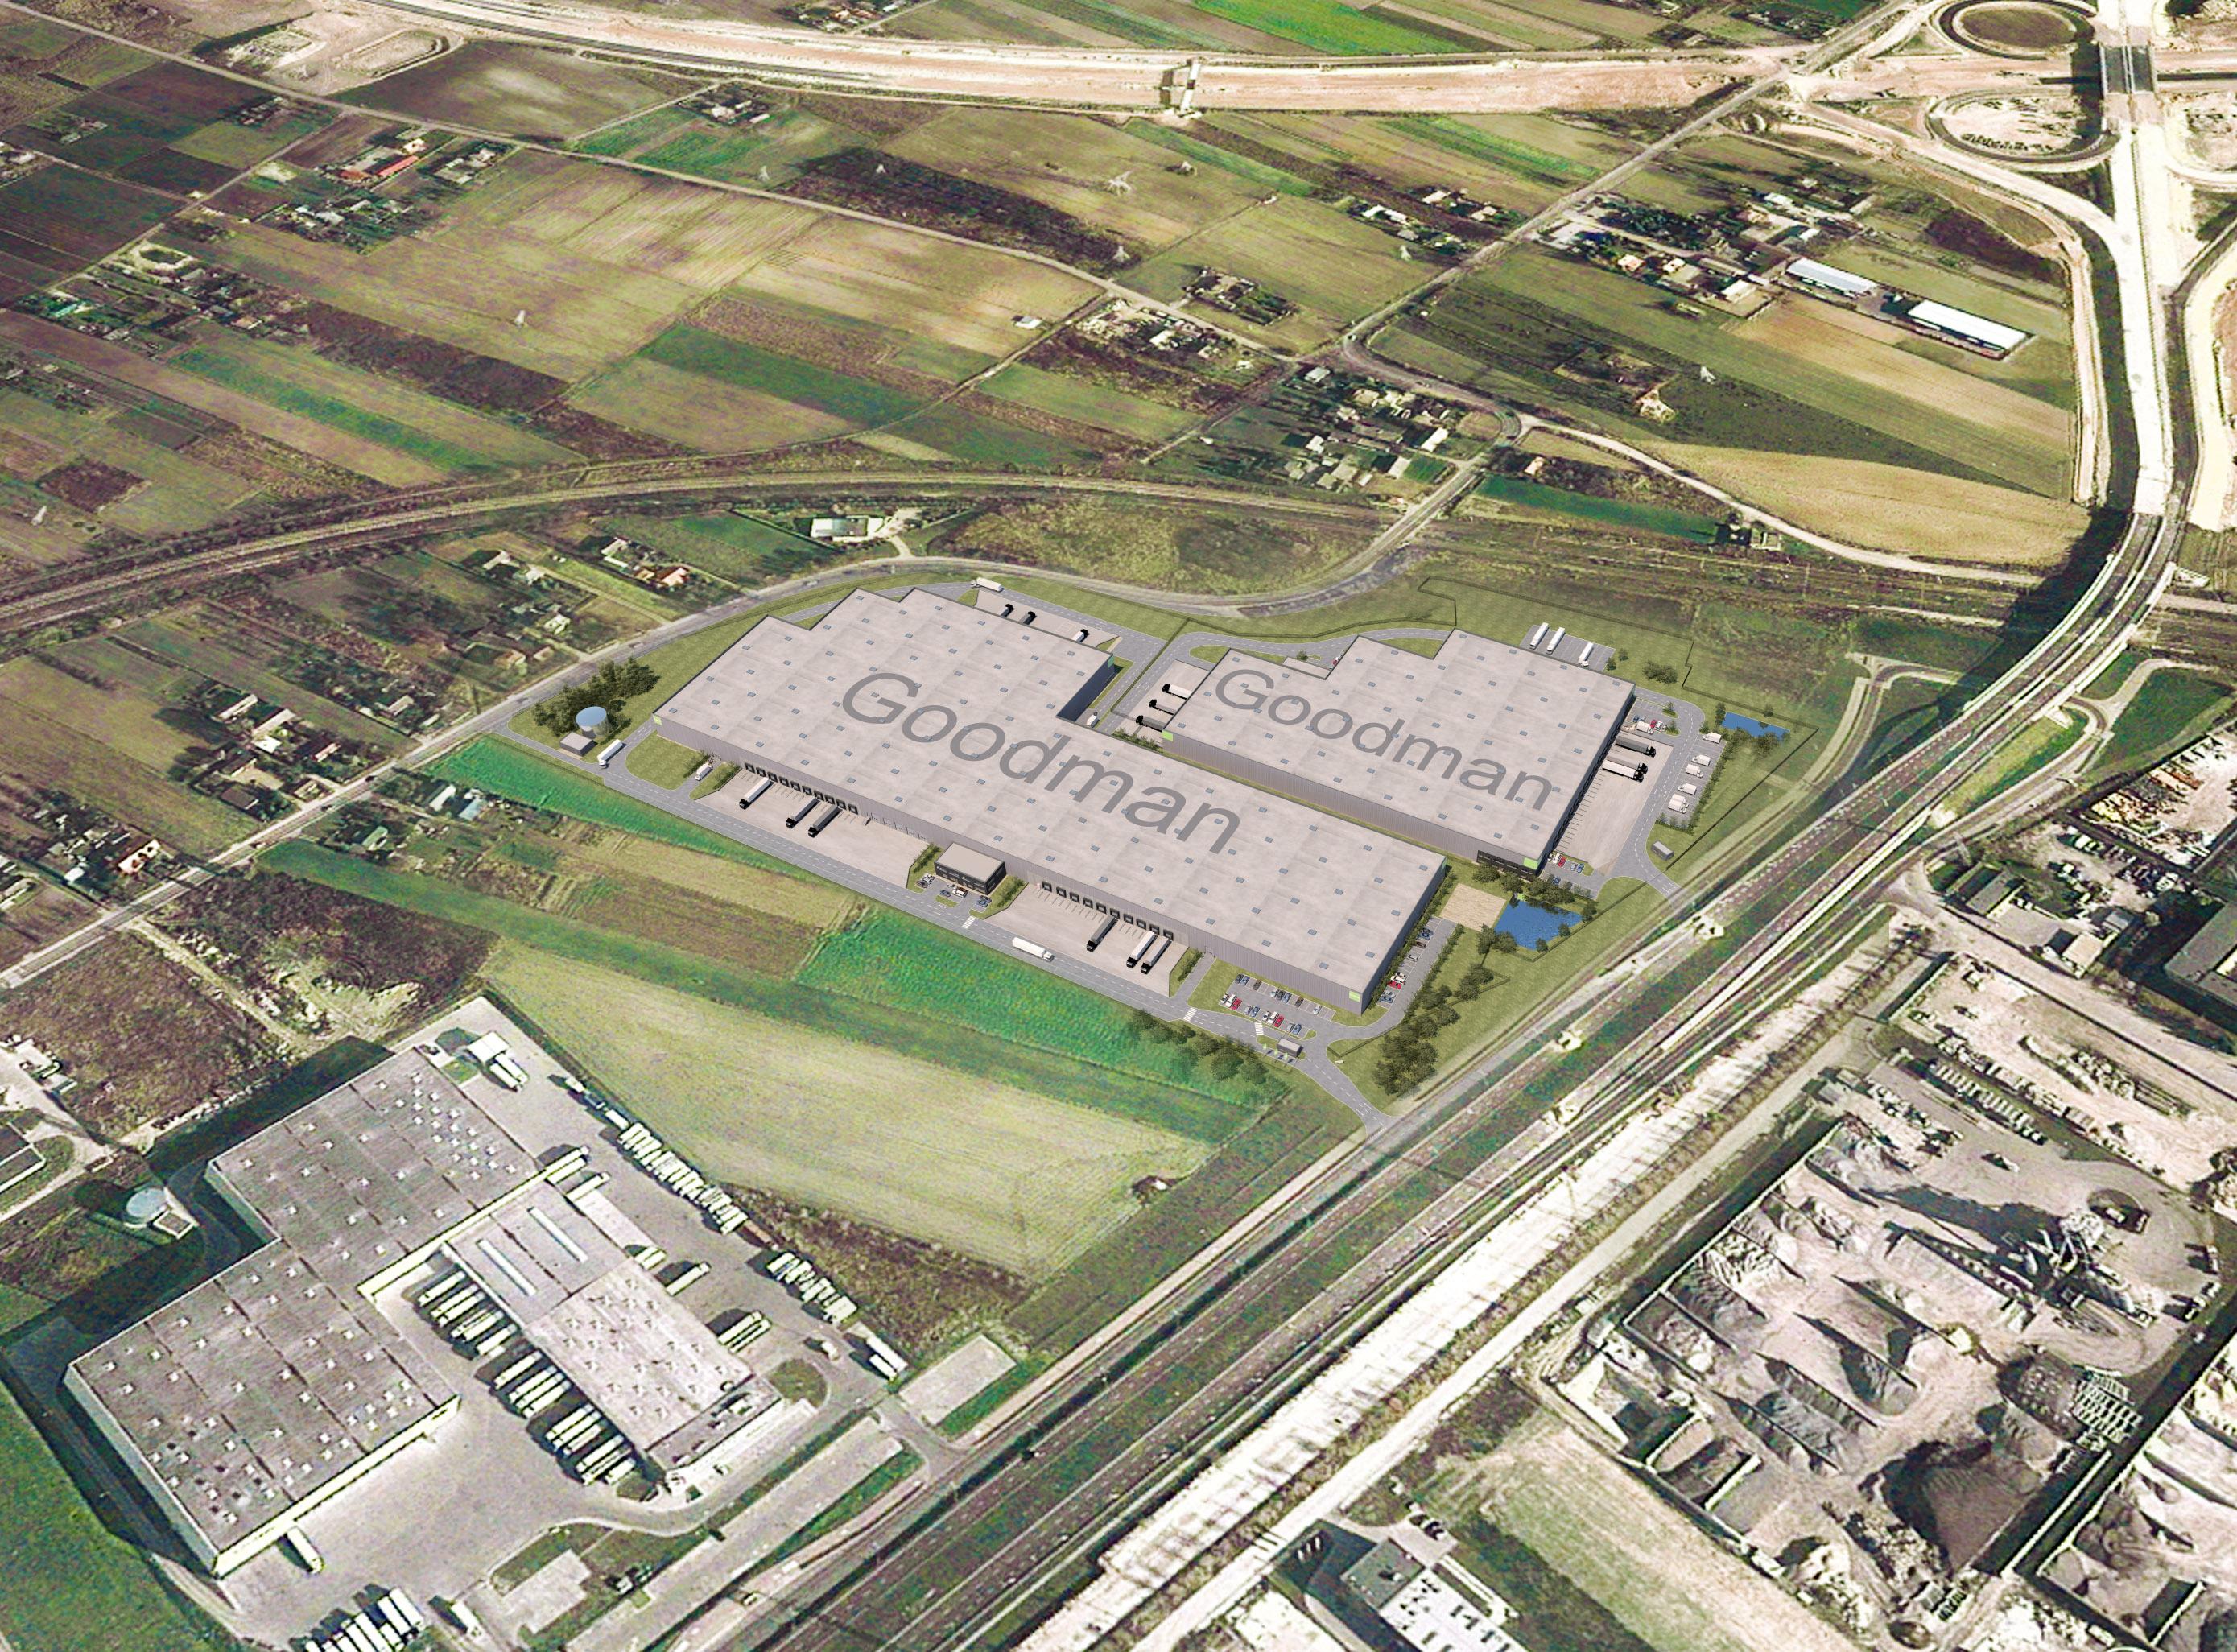 Park magazynowy Goodman Lublin Logistics Centre widziane z perspektywy lotu ptaka.